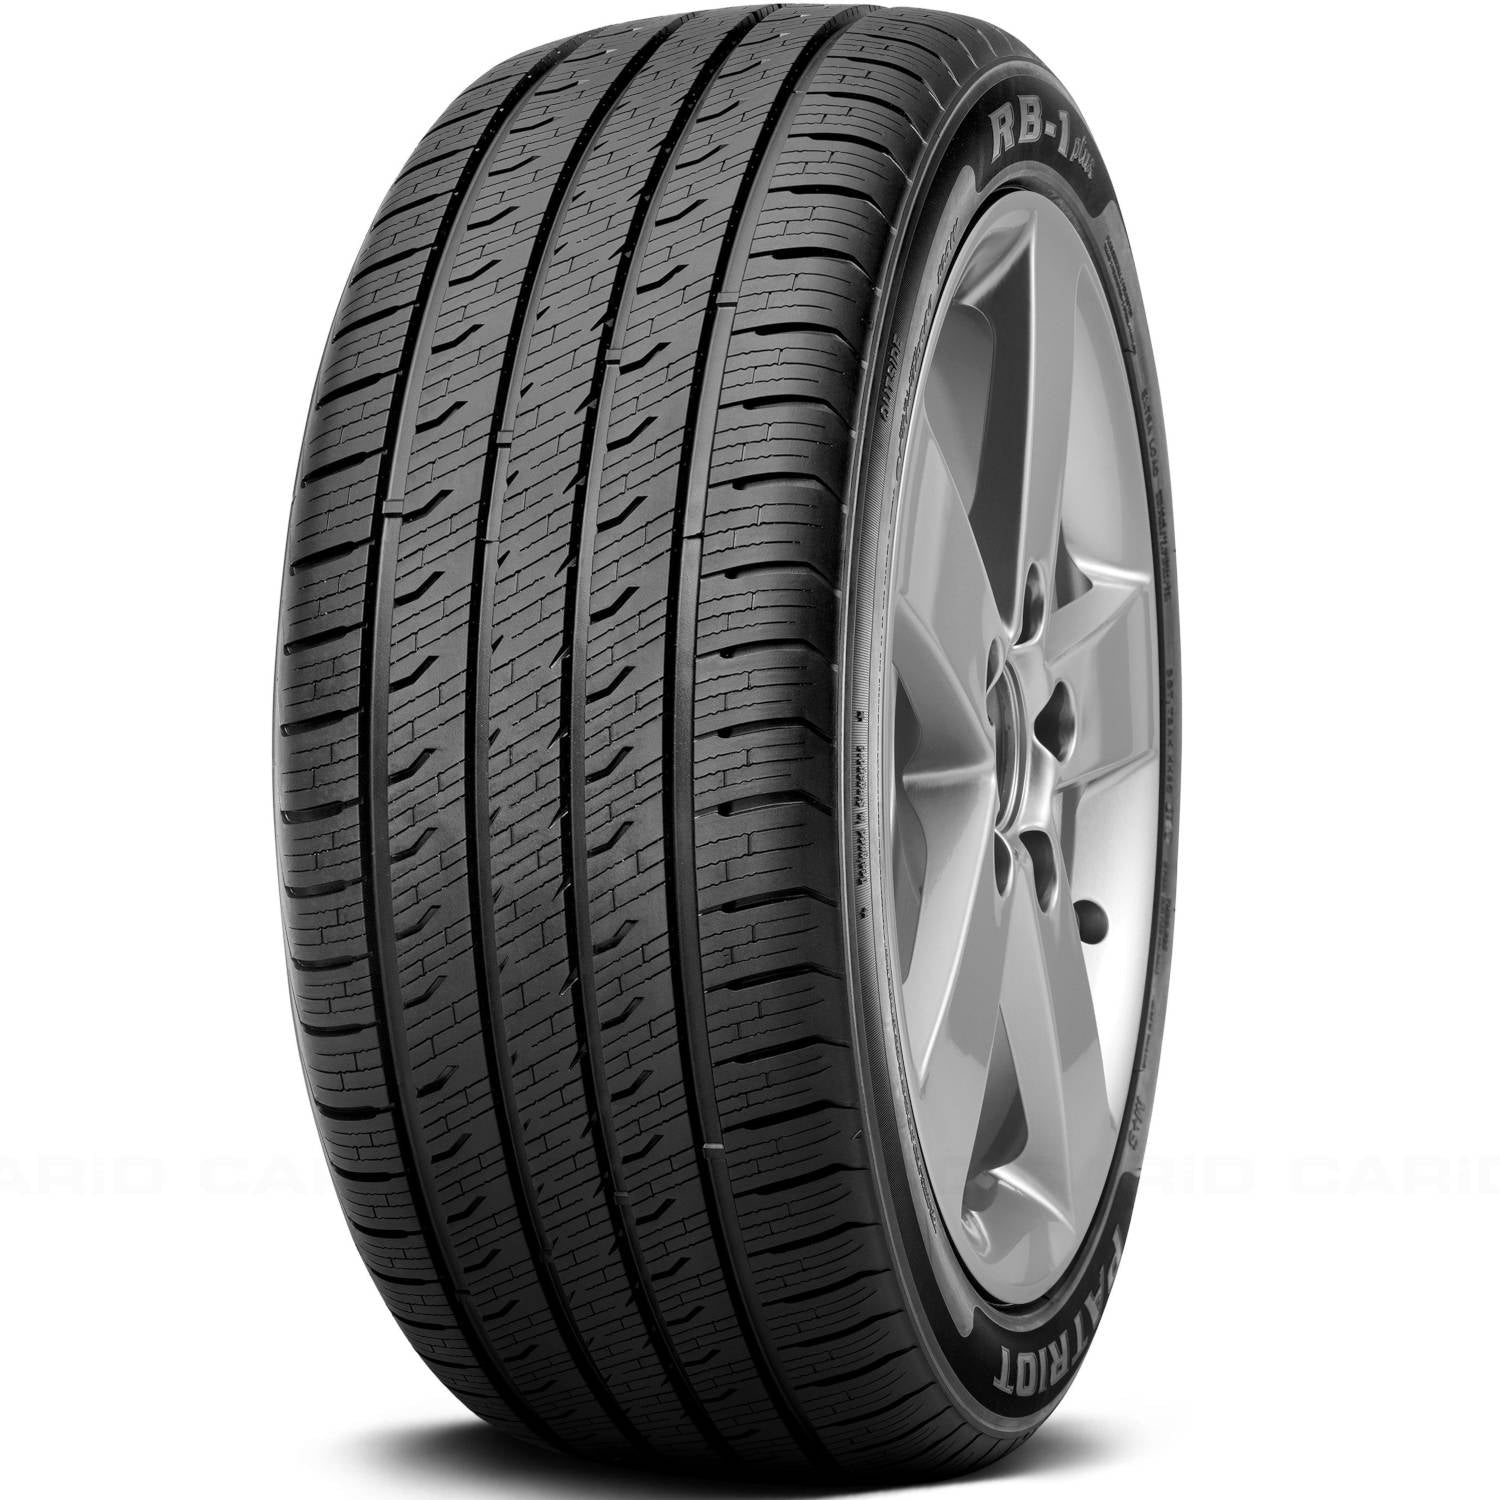 PATRIOT RB-1 PLUS 215/55ZR16 (25.5X8.5R 16) Tires